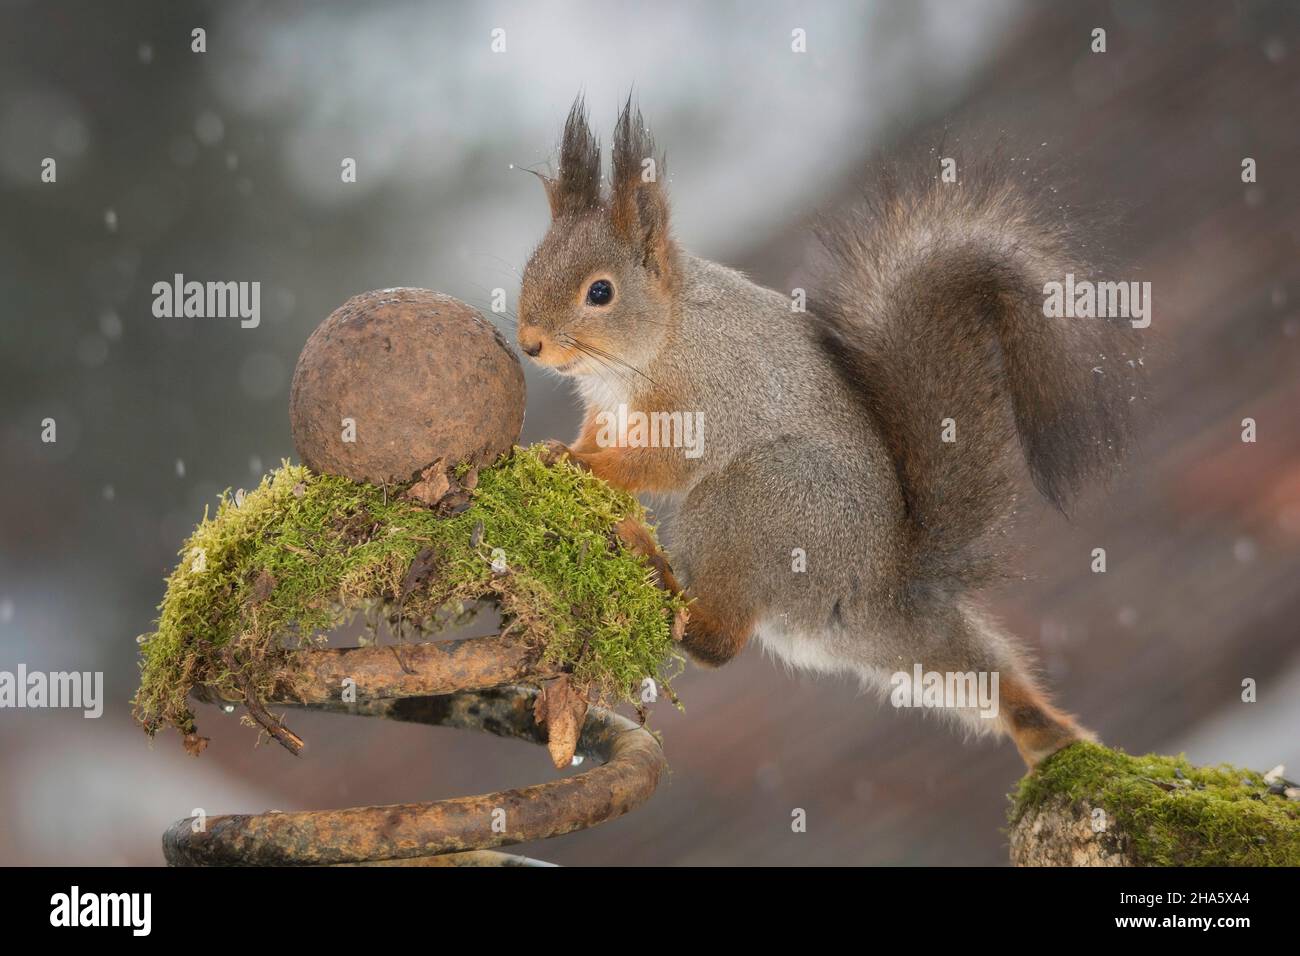 L'écureuil roux sur la mousse en faisant un pas vers une boule de fer alors que l'enneigement Banque D'Images